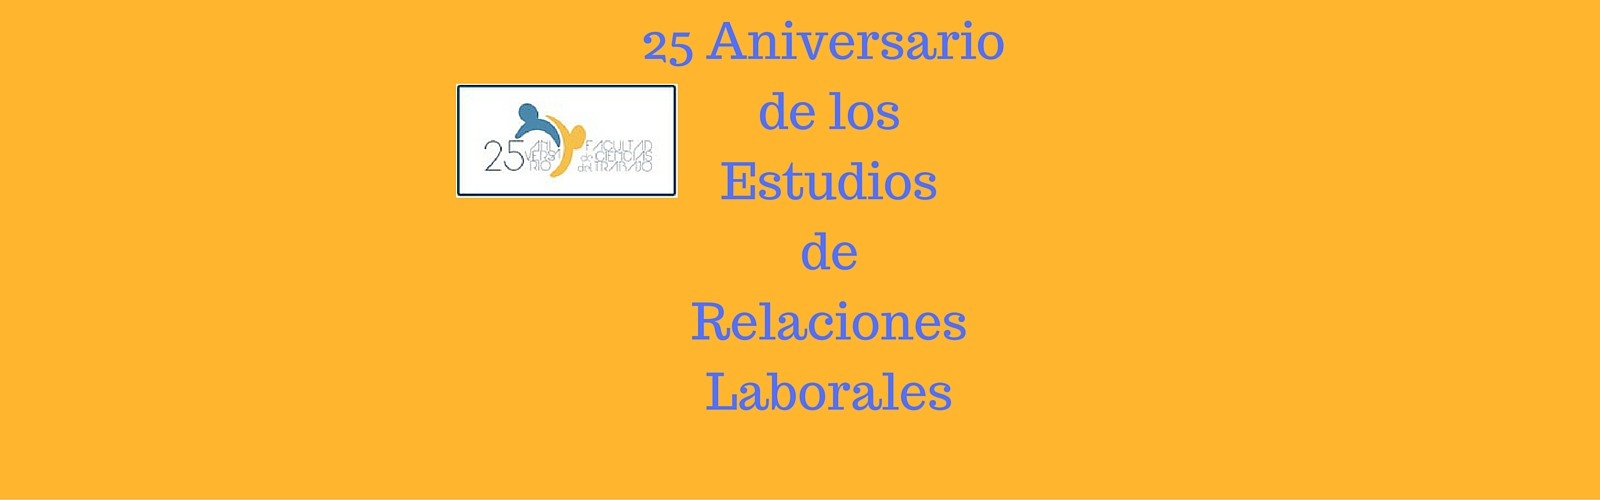 25 Aniversario de los estudios de Relaciones Laborales en la Universidad de Cádiz